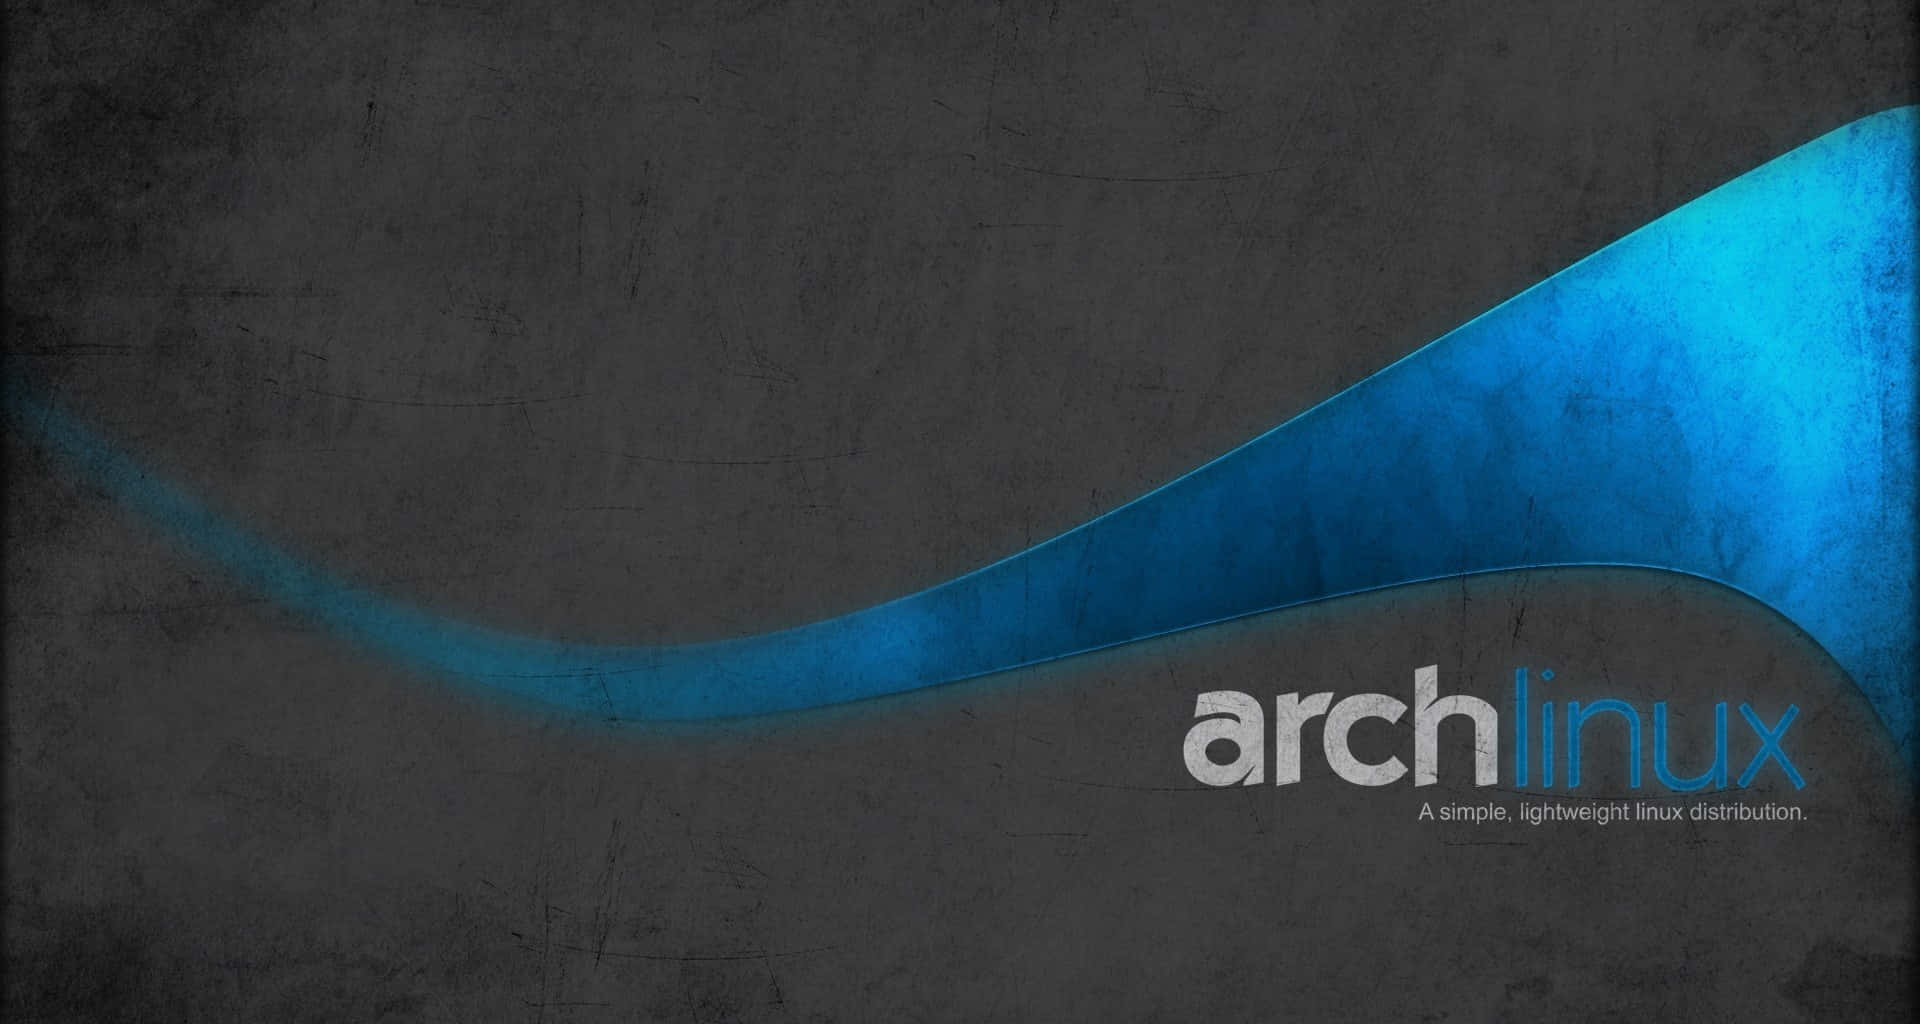 Arch Linux Wallpaper - Spectrum Wallpaper